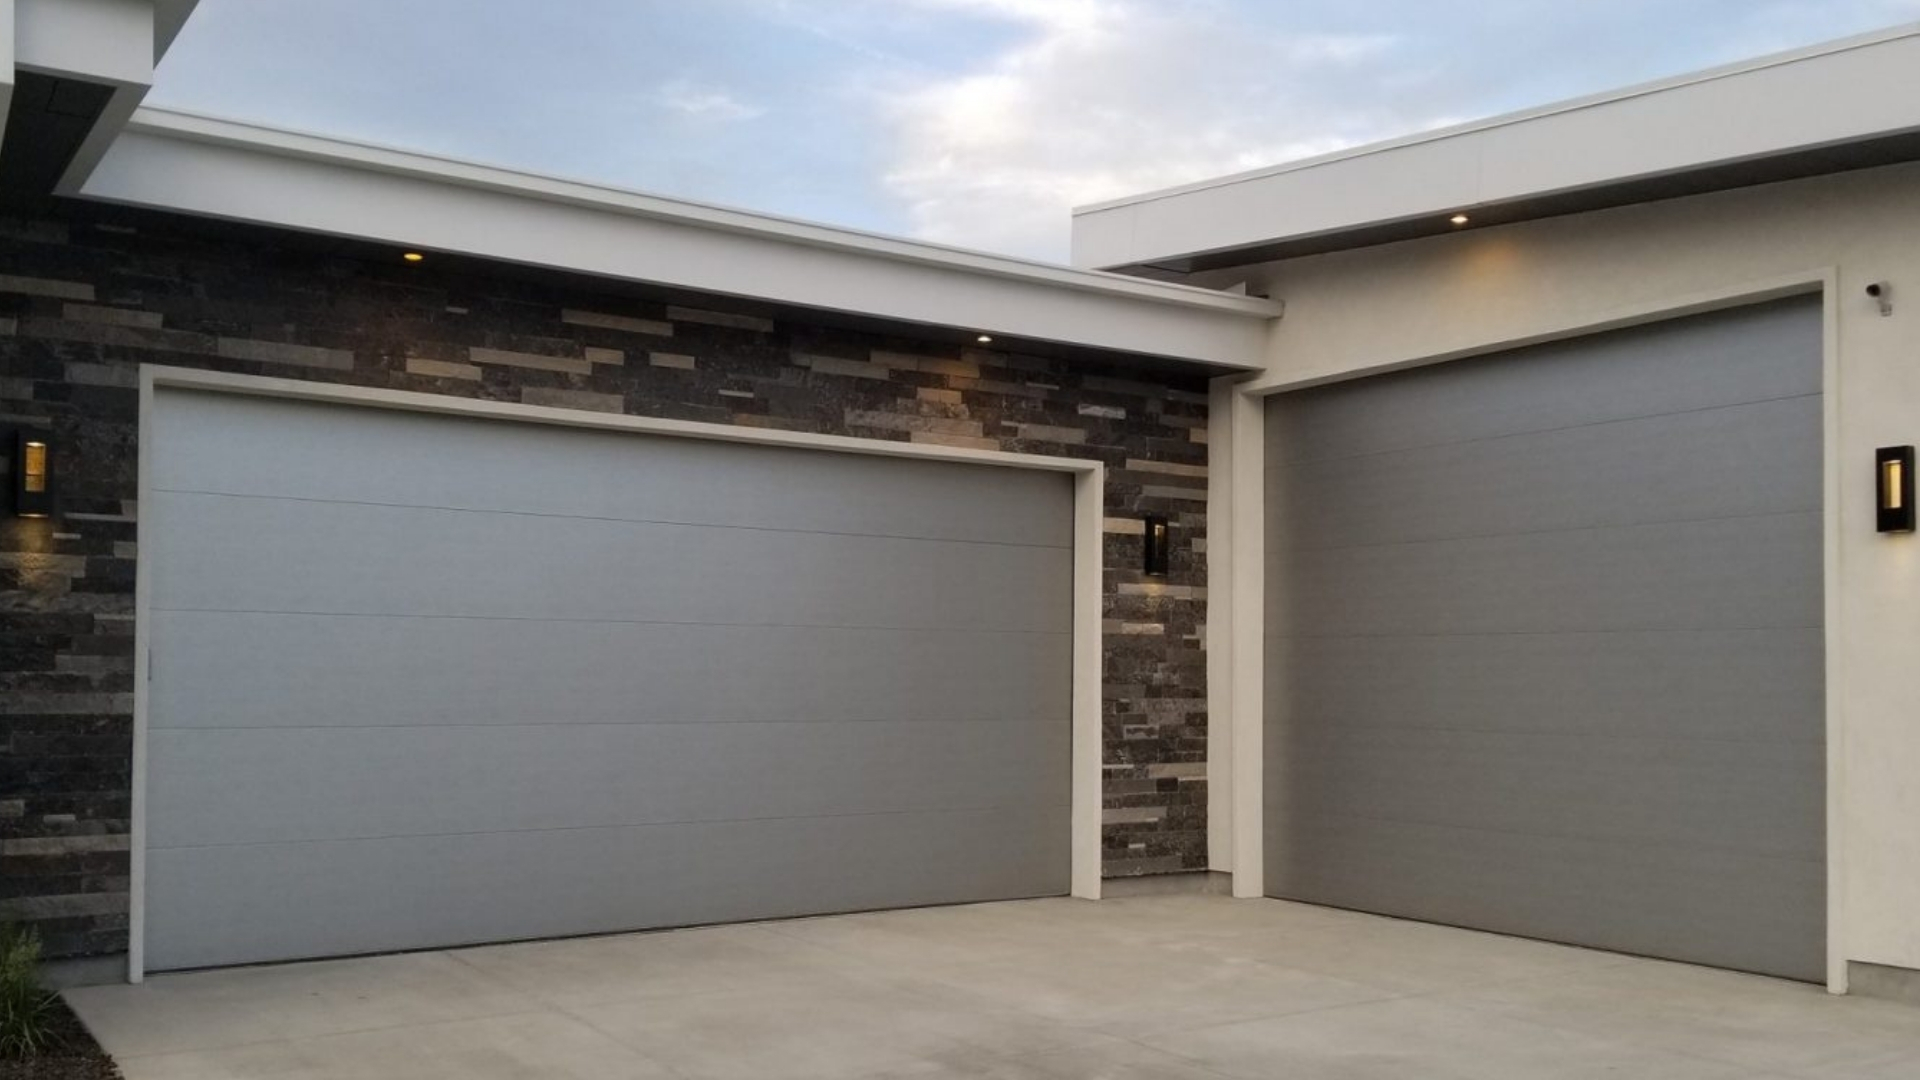 New garage doors